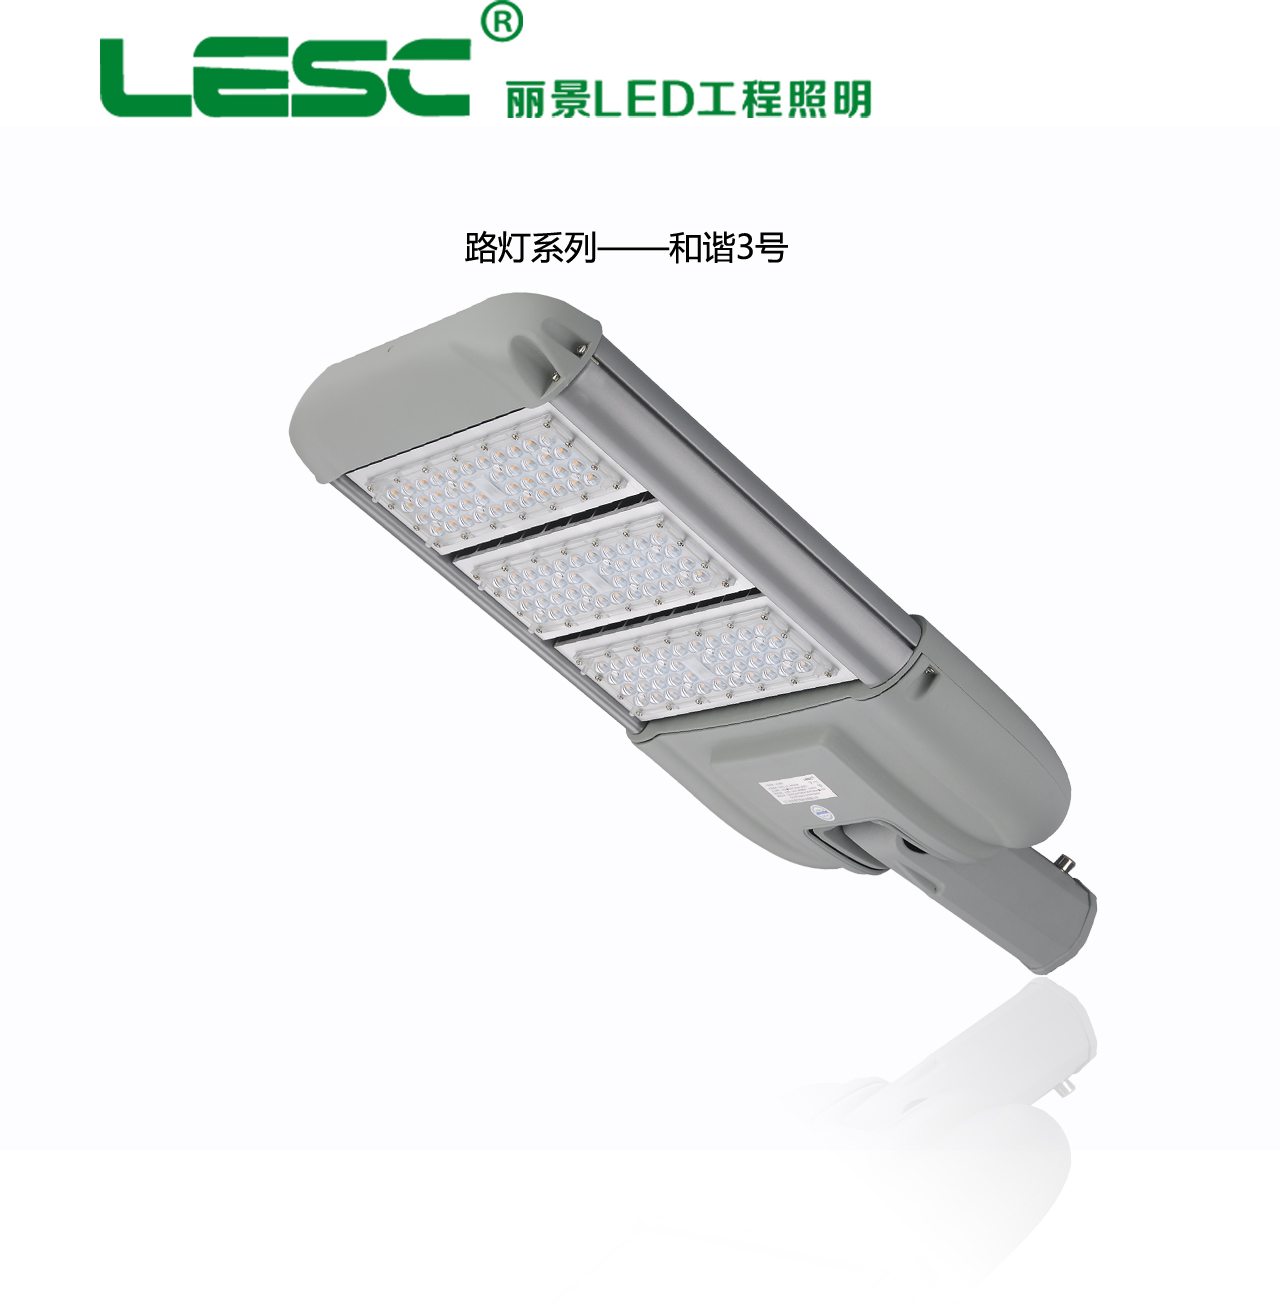 供应和谐三号LED路灯灯头厂家供应大功率LED路灯照明热销新型节能环保路灯系列